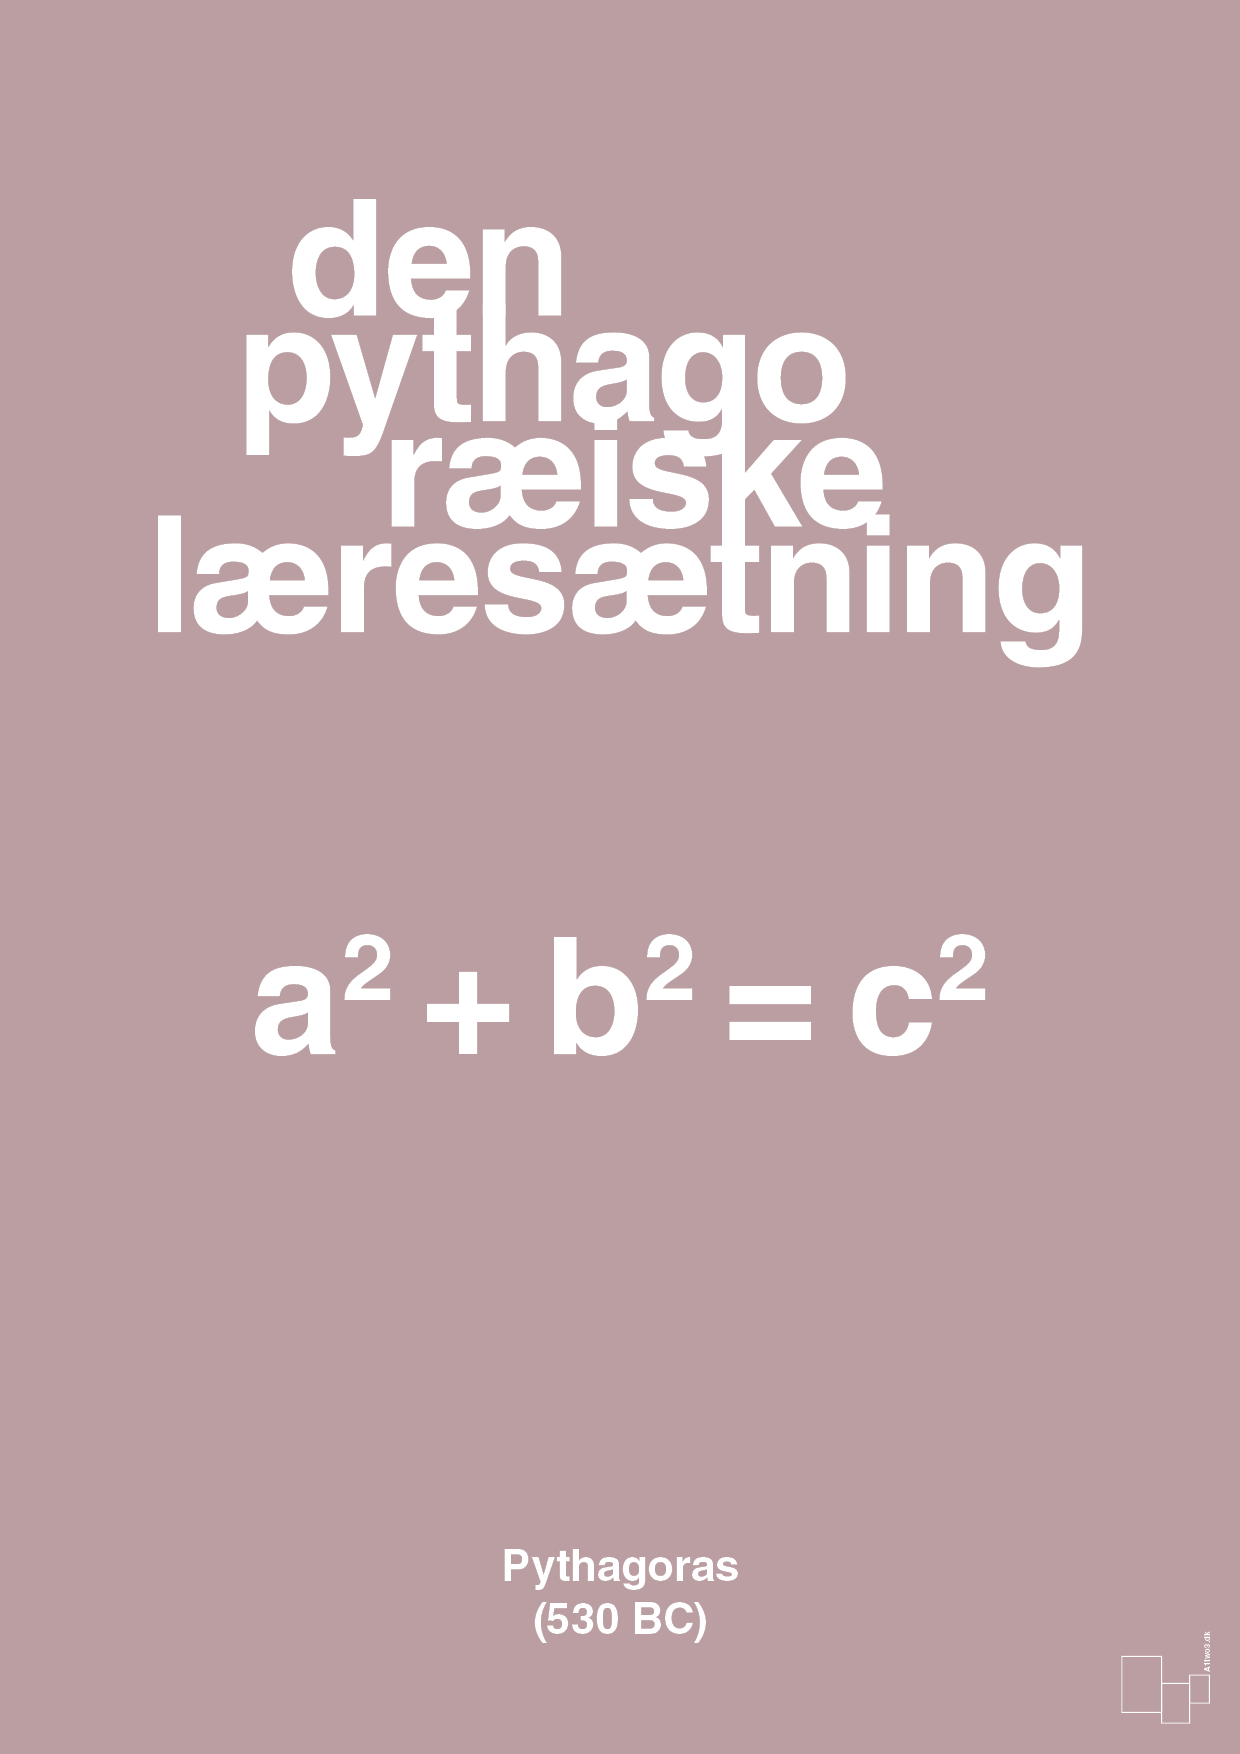 den pythagoræiske læresætning - Plakat med Videnskab i Light Rose